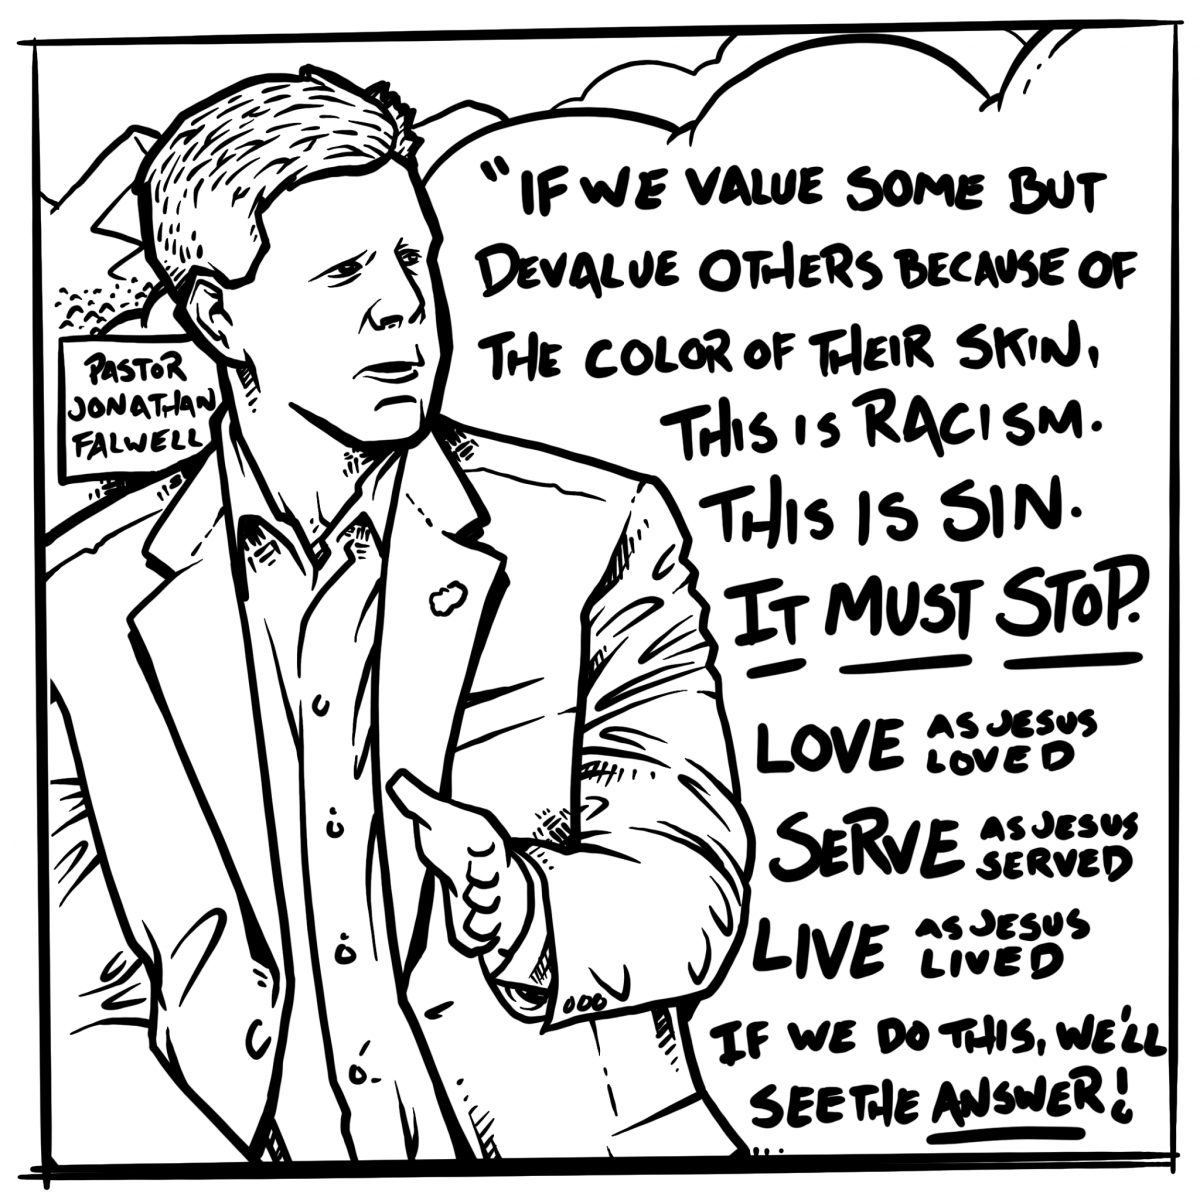 Jonathan Falwell on Racism